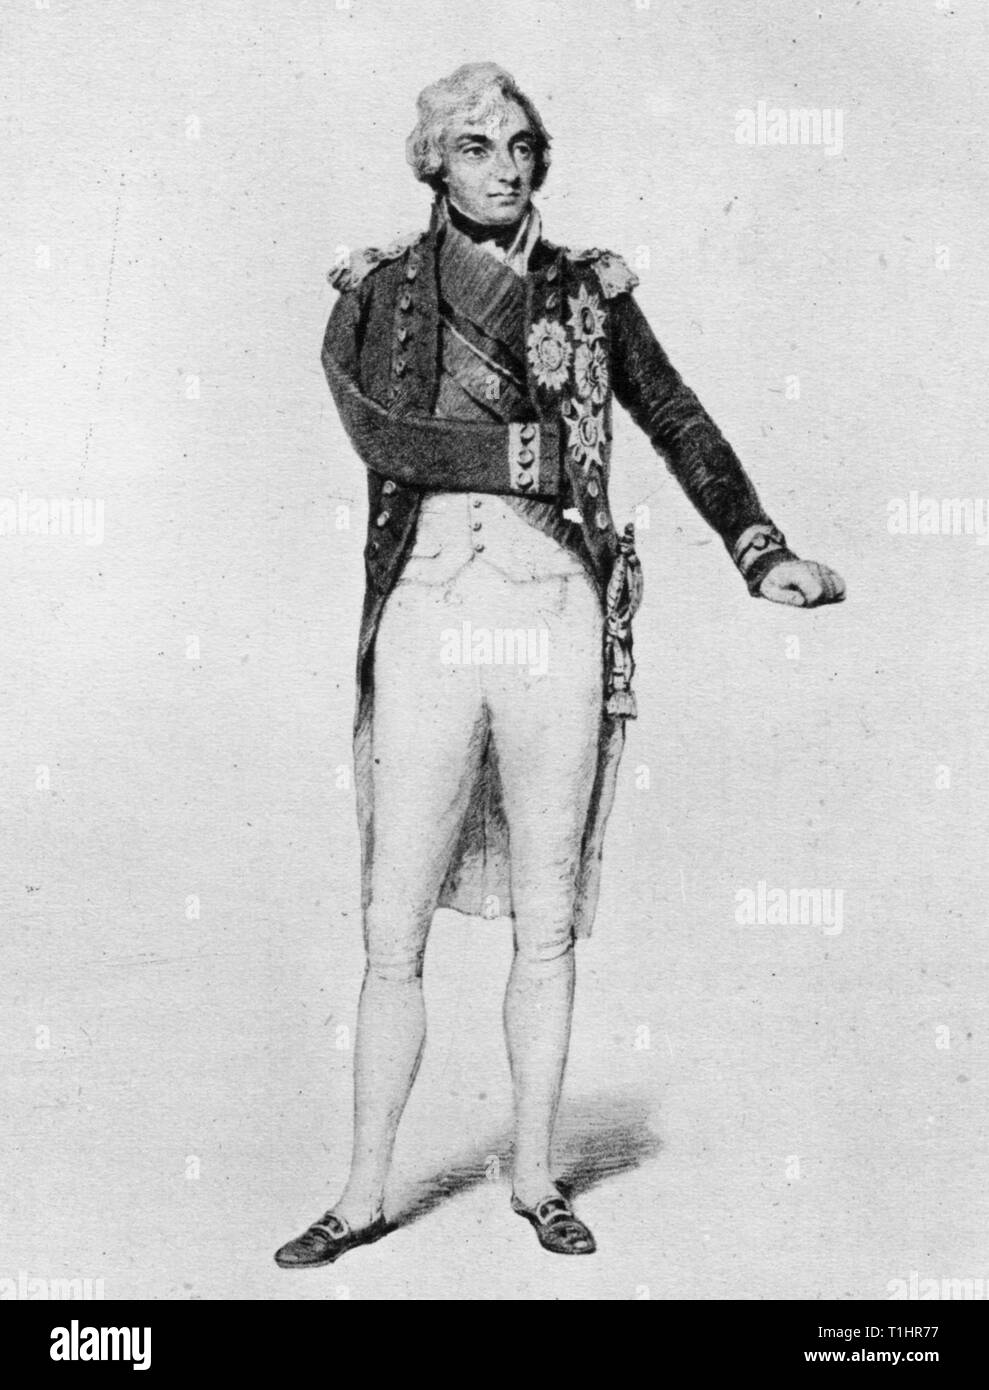 Admiral Horatio Nelson, 1. Viscount Nelson (1758-1805), c1802. Nach Henry Edridge (1768-1821). Nelson war vor allem für seine Führungsqualitäten und seine strategischen Fähigkeiten sowie seine unkonventionellen Taktiken bekannt, insbesondere während der Napoleonischen Kriege. Er wurde im Kampf mehrmals verletzt, verlor einen Arm und den Anblick auf einem Auge. Von seinen Siegen ist der berühmteste die Schlacht von Trafalgar im Jahr 1805, bei der er angeschossen und getötet wurde. Stockfoto